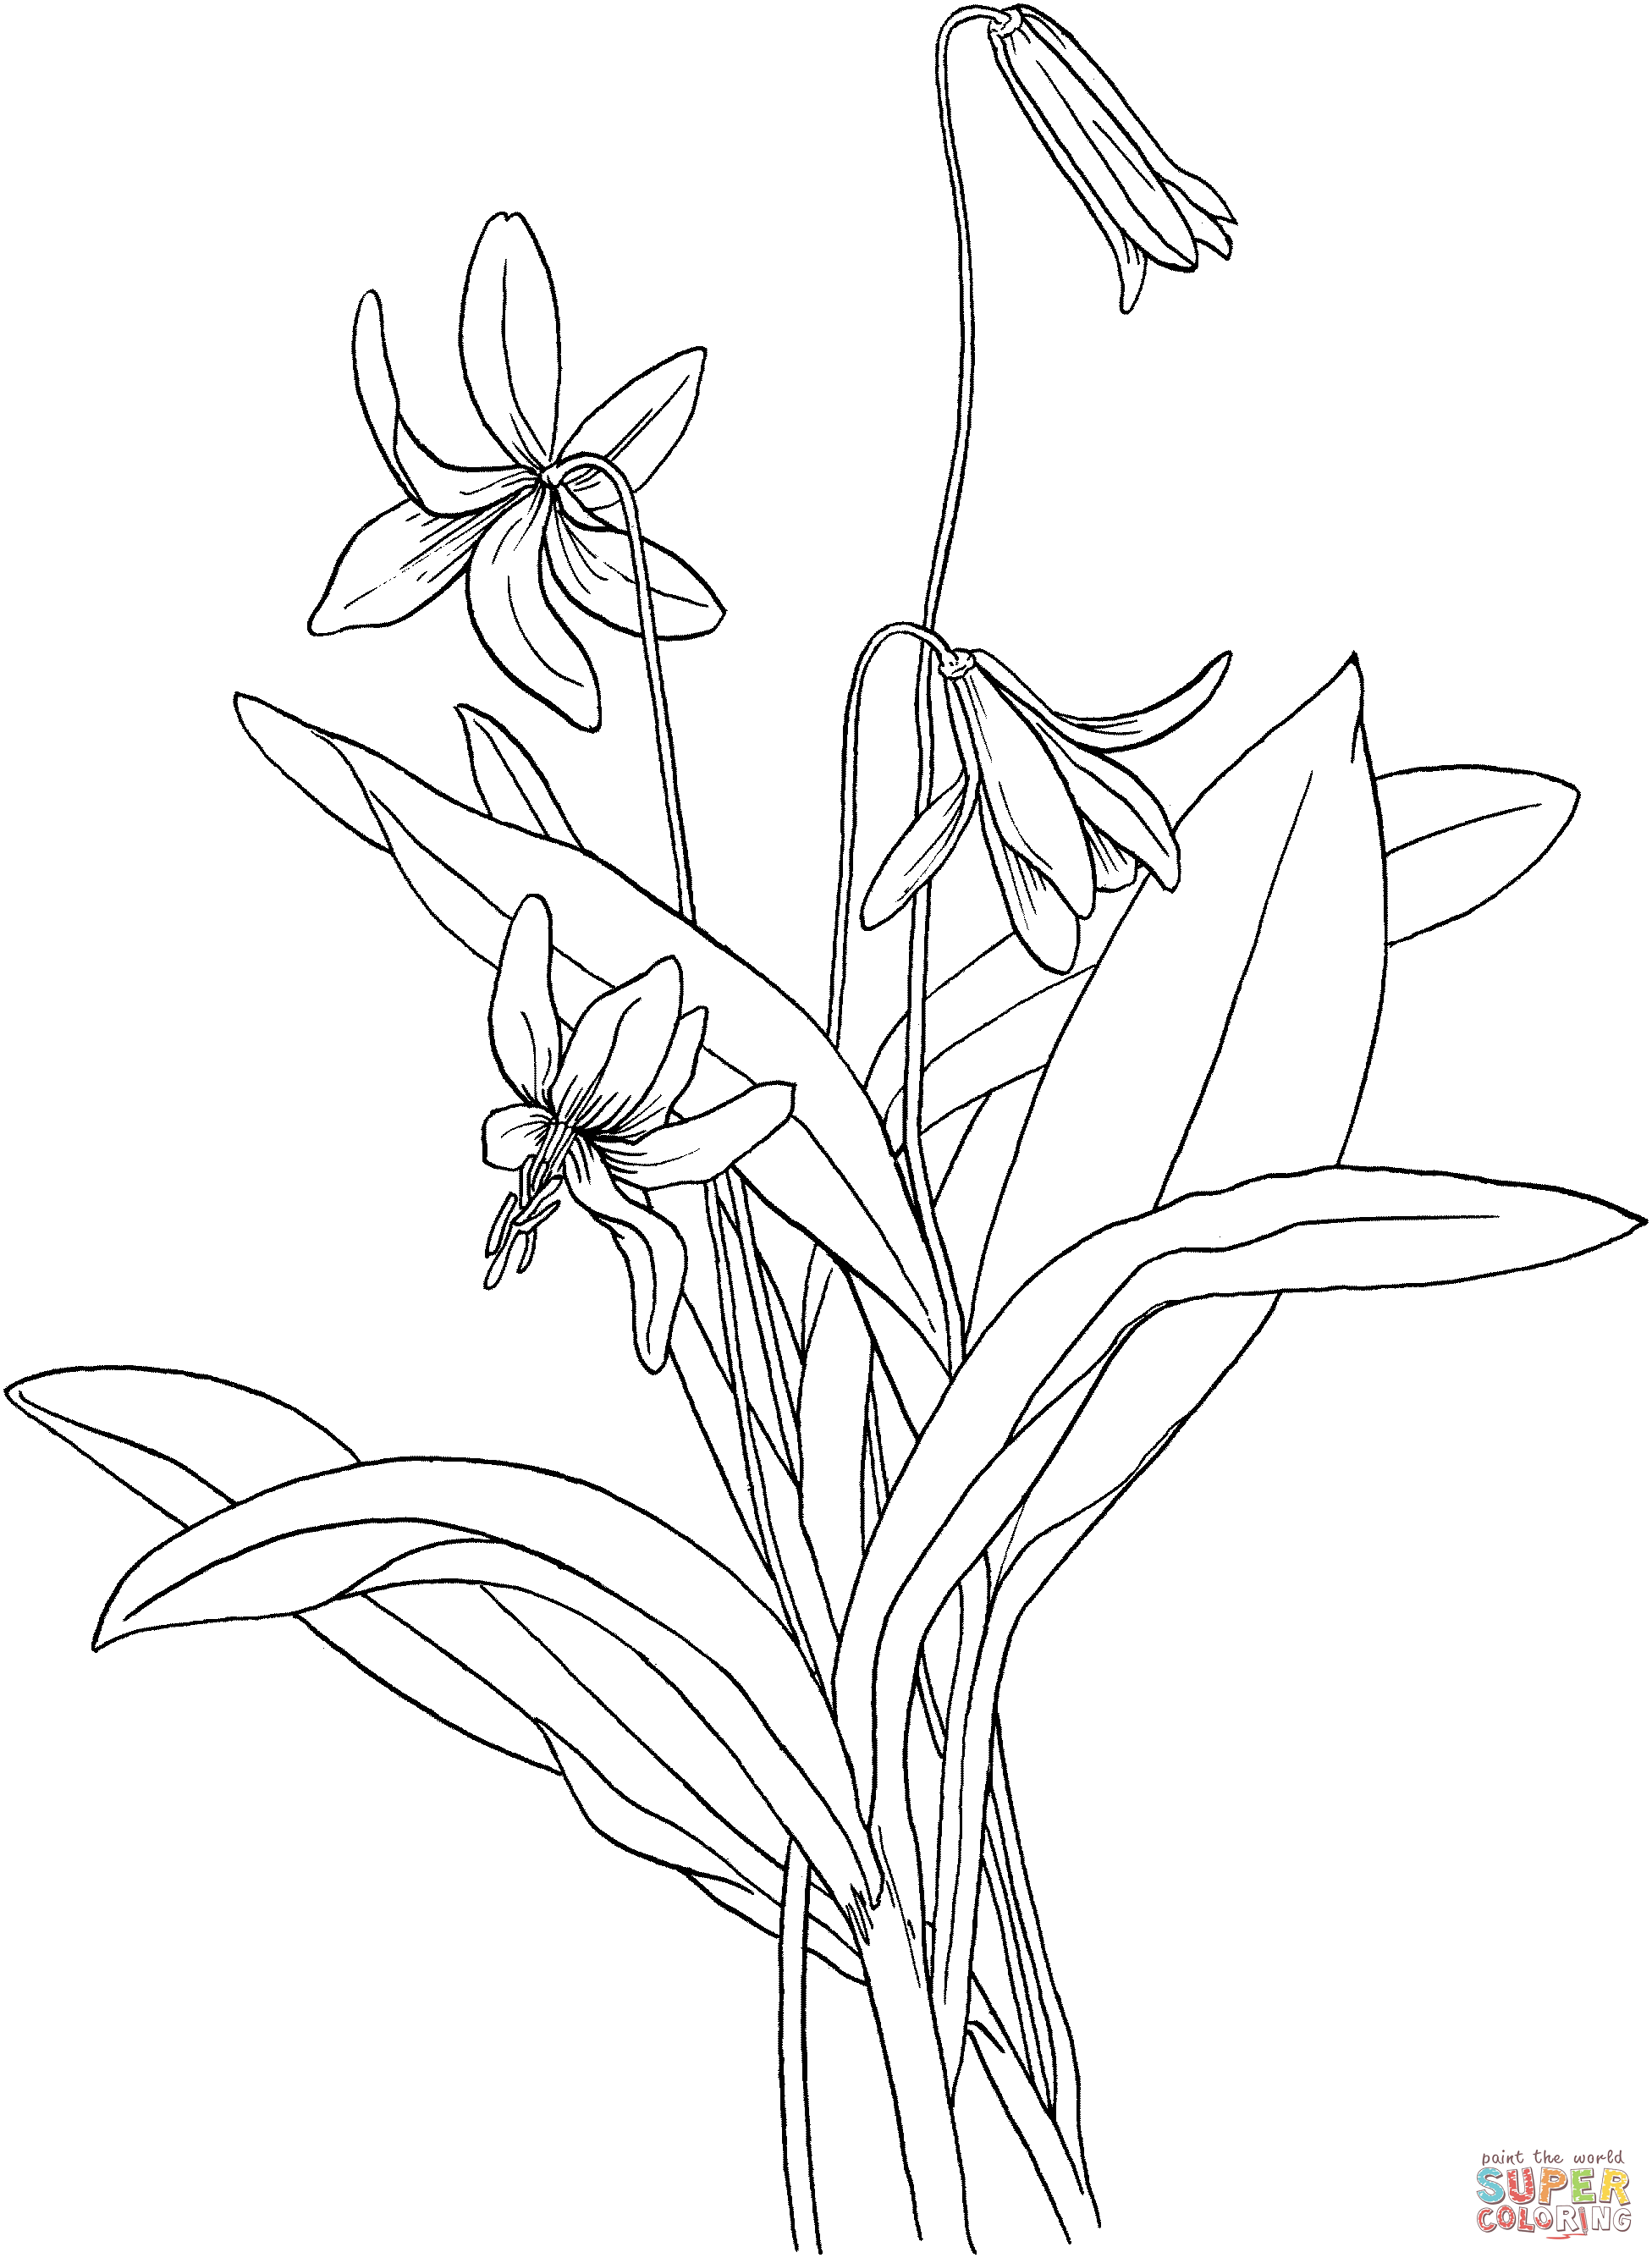 Erythronium Americanum oder Forellenlilie aus Lilien